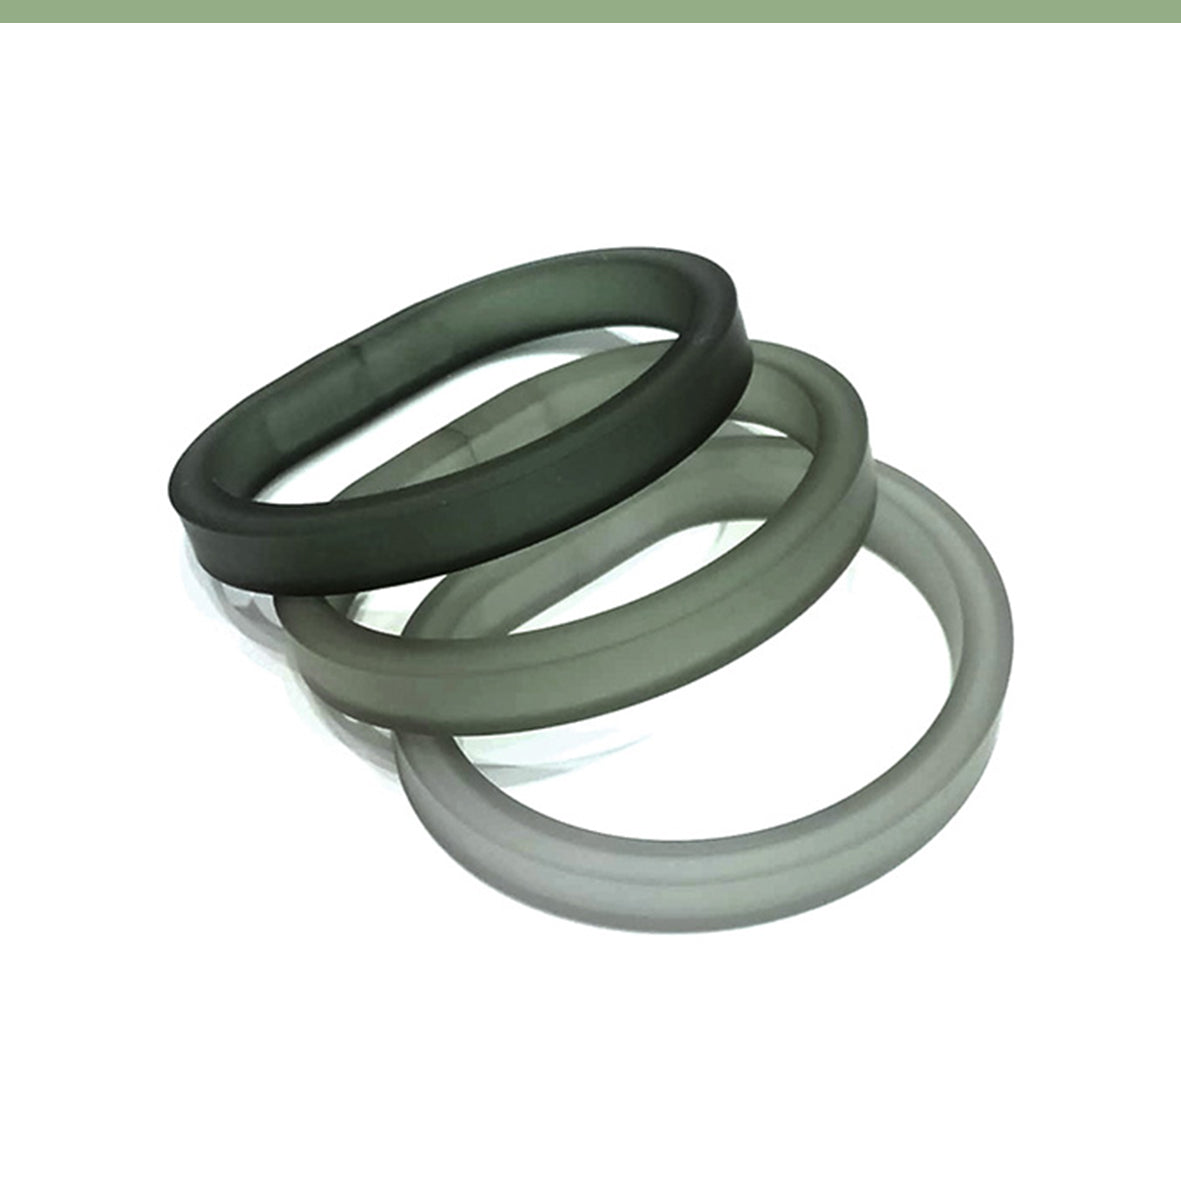 Drim Trio set of 3 rubber bracelets | 8 colors available